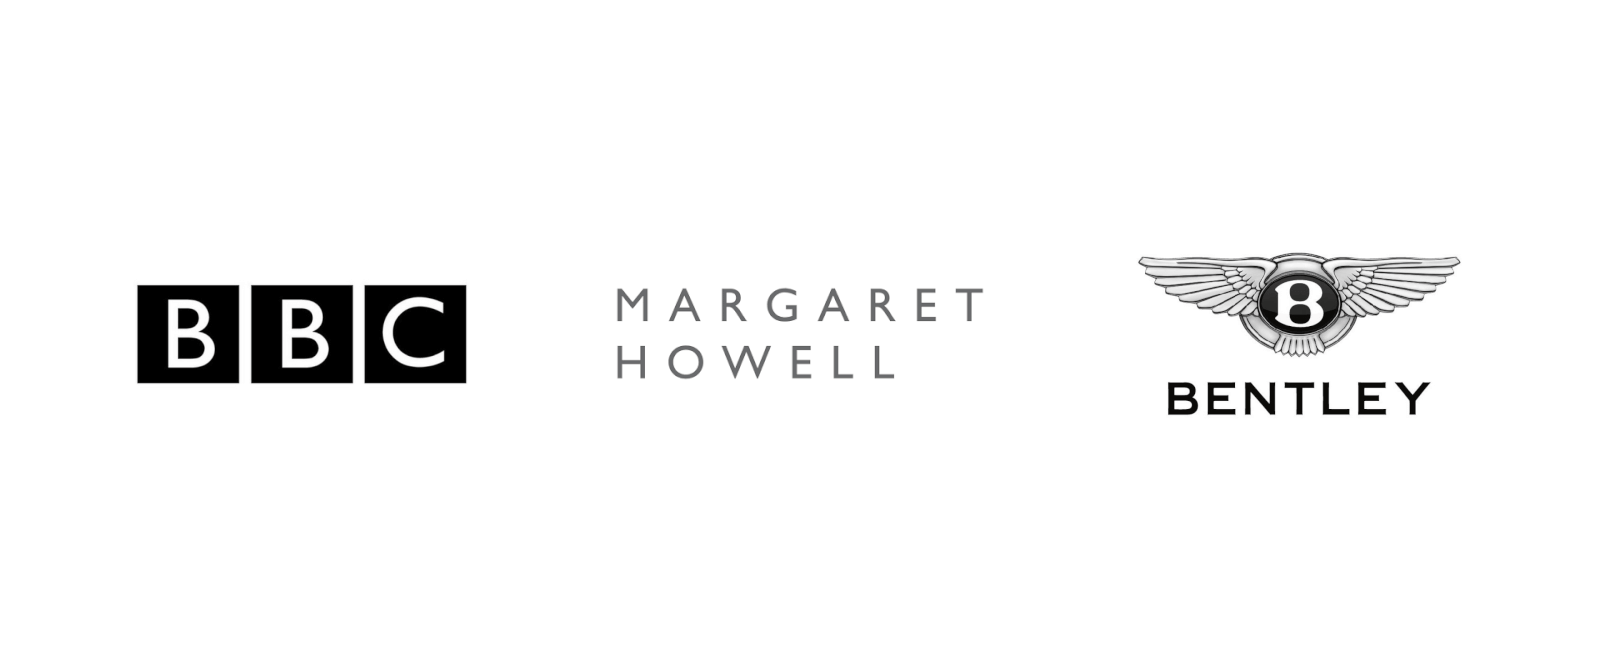 BBC、Margaret Howell、ベントレーのロゴ